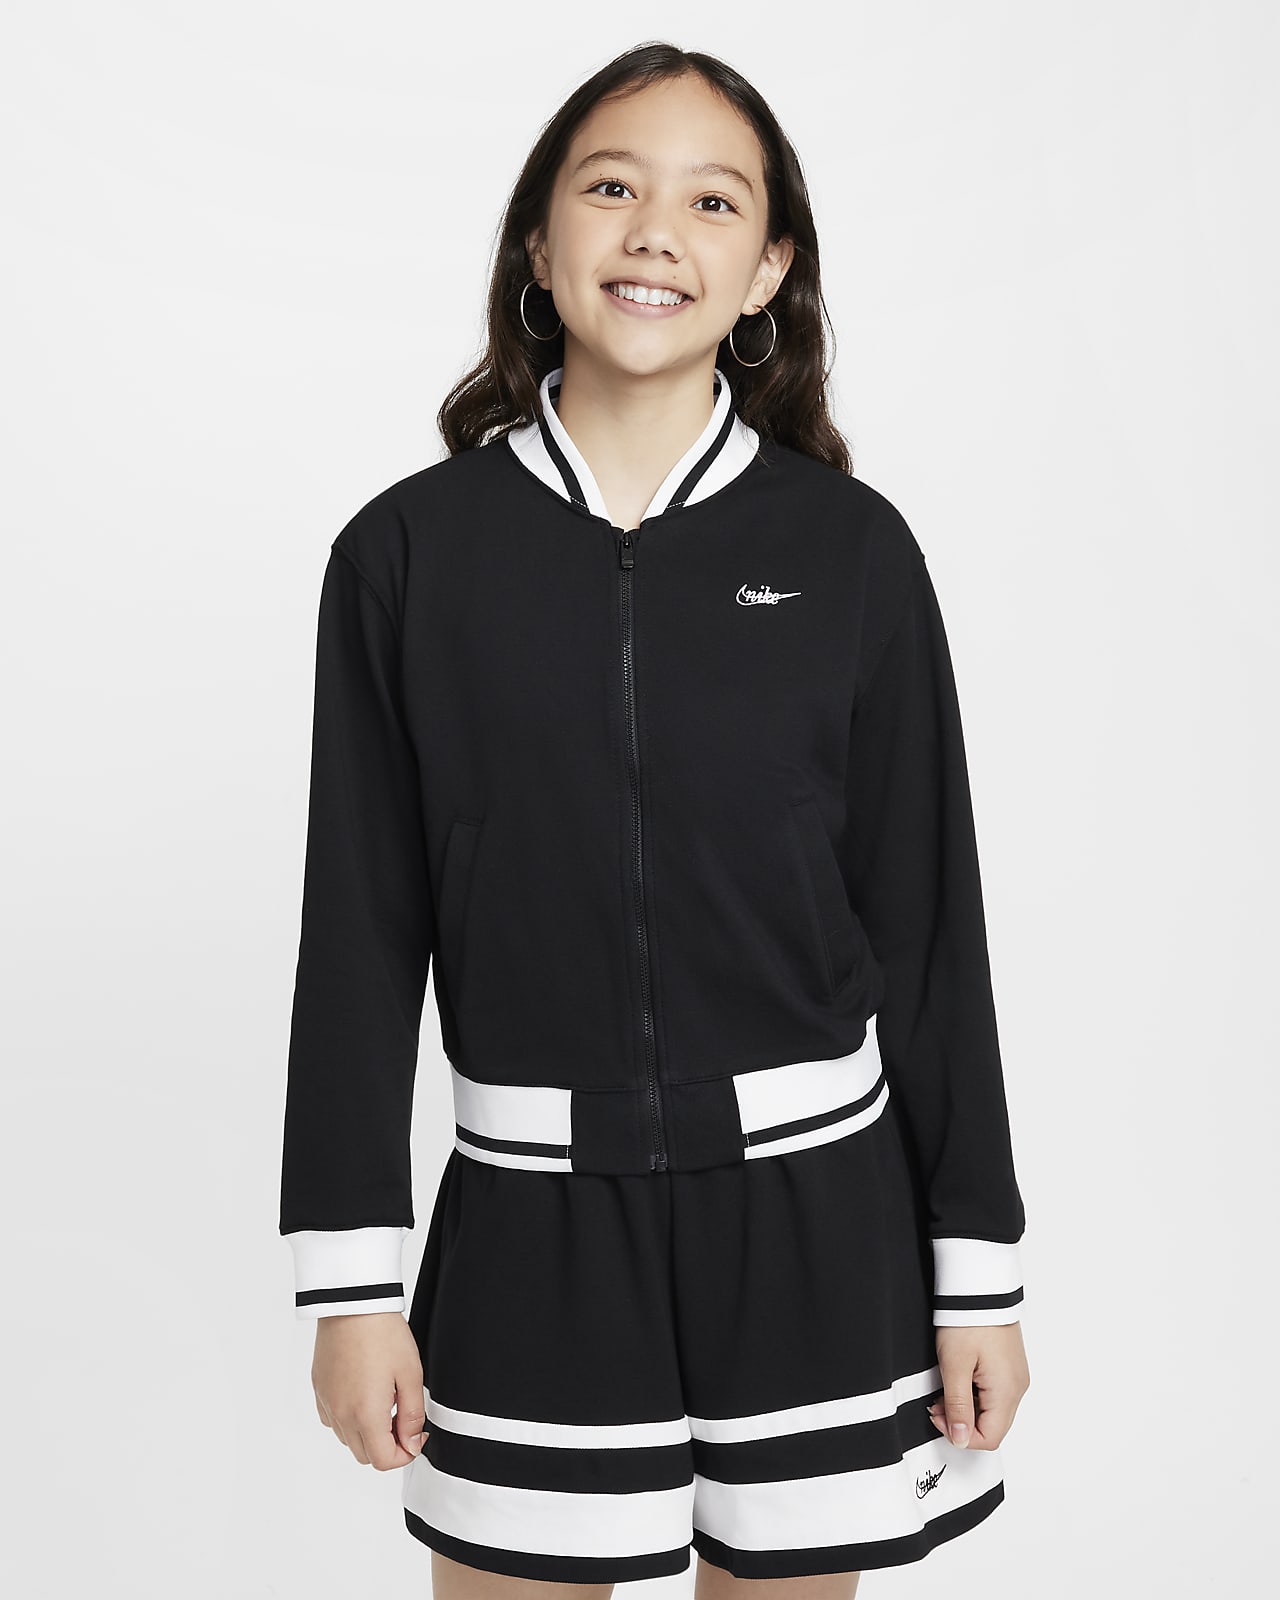 Nike Sportswear Girls' Jacket